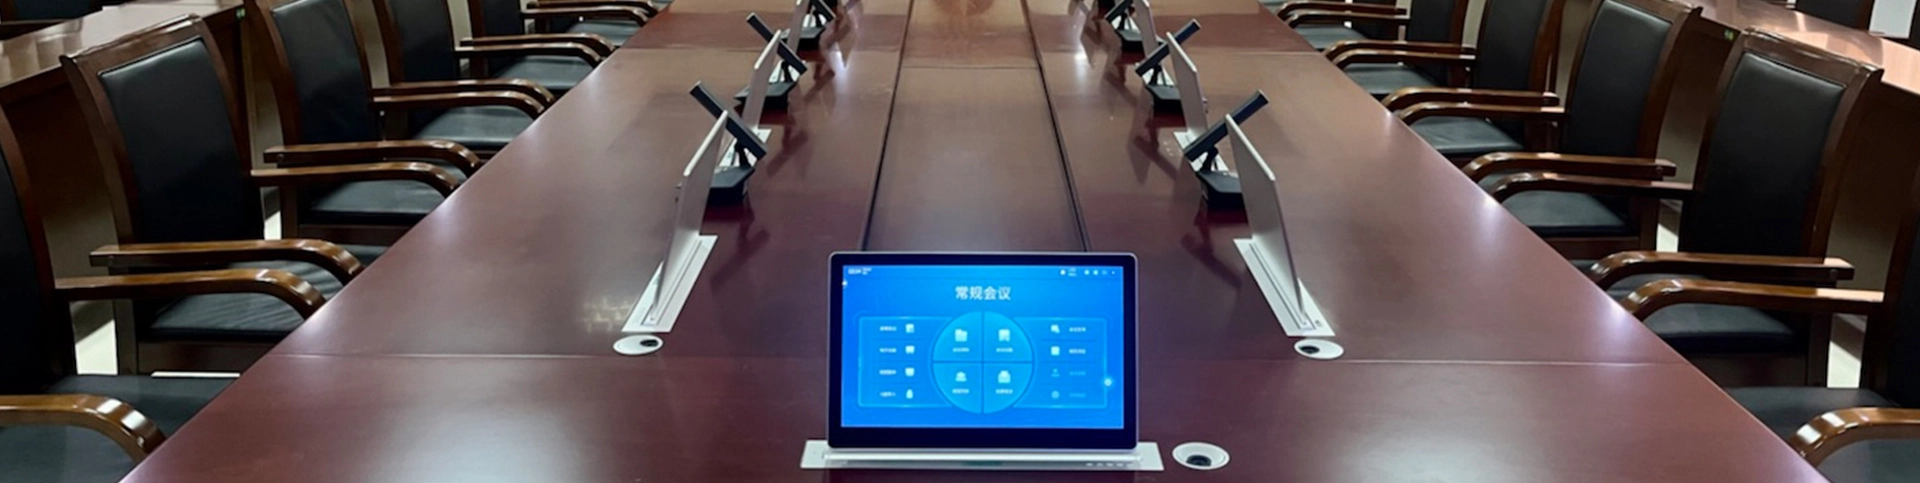 Sistem persidangan tanpa kertas untuk projek mahkamah Zhanjiang